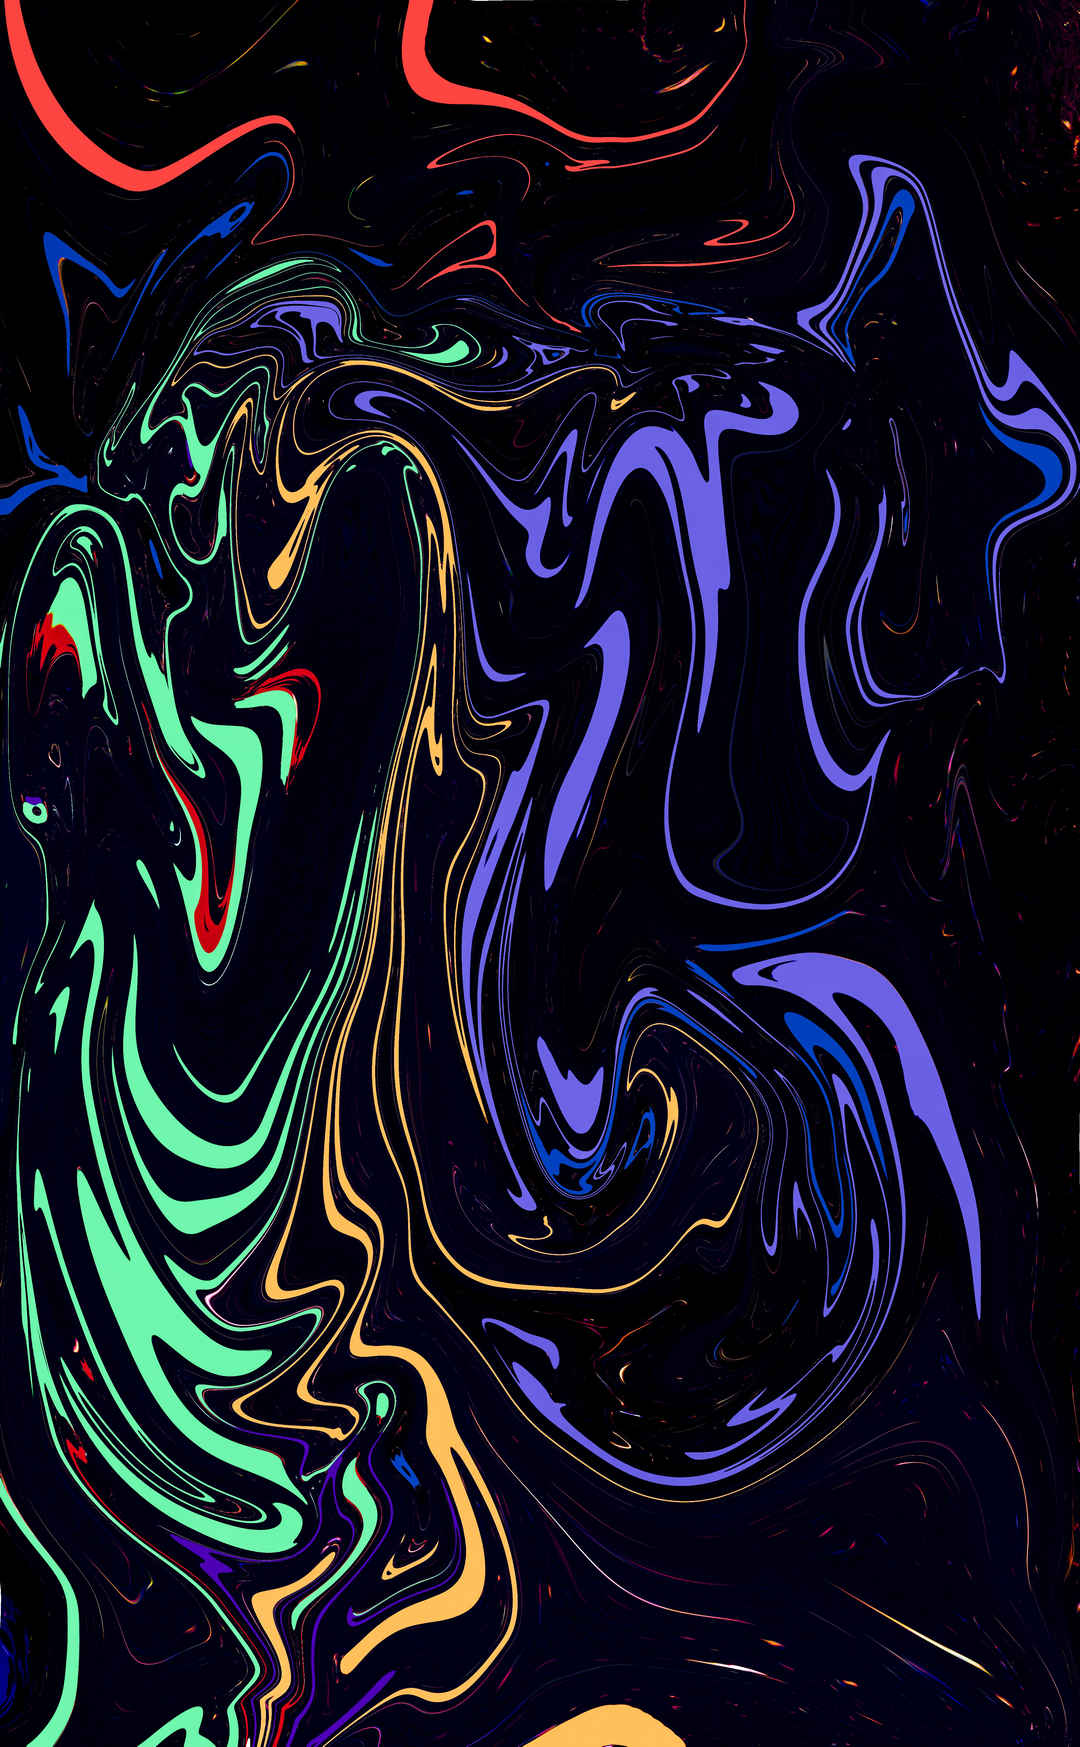 彩色 抽象 流体 艺术 背景手机壁纸-